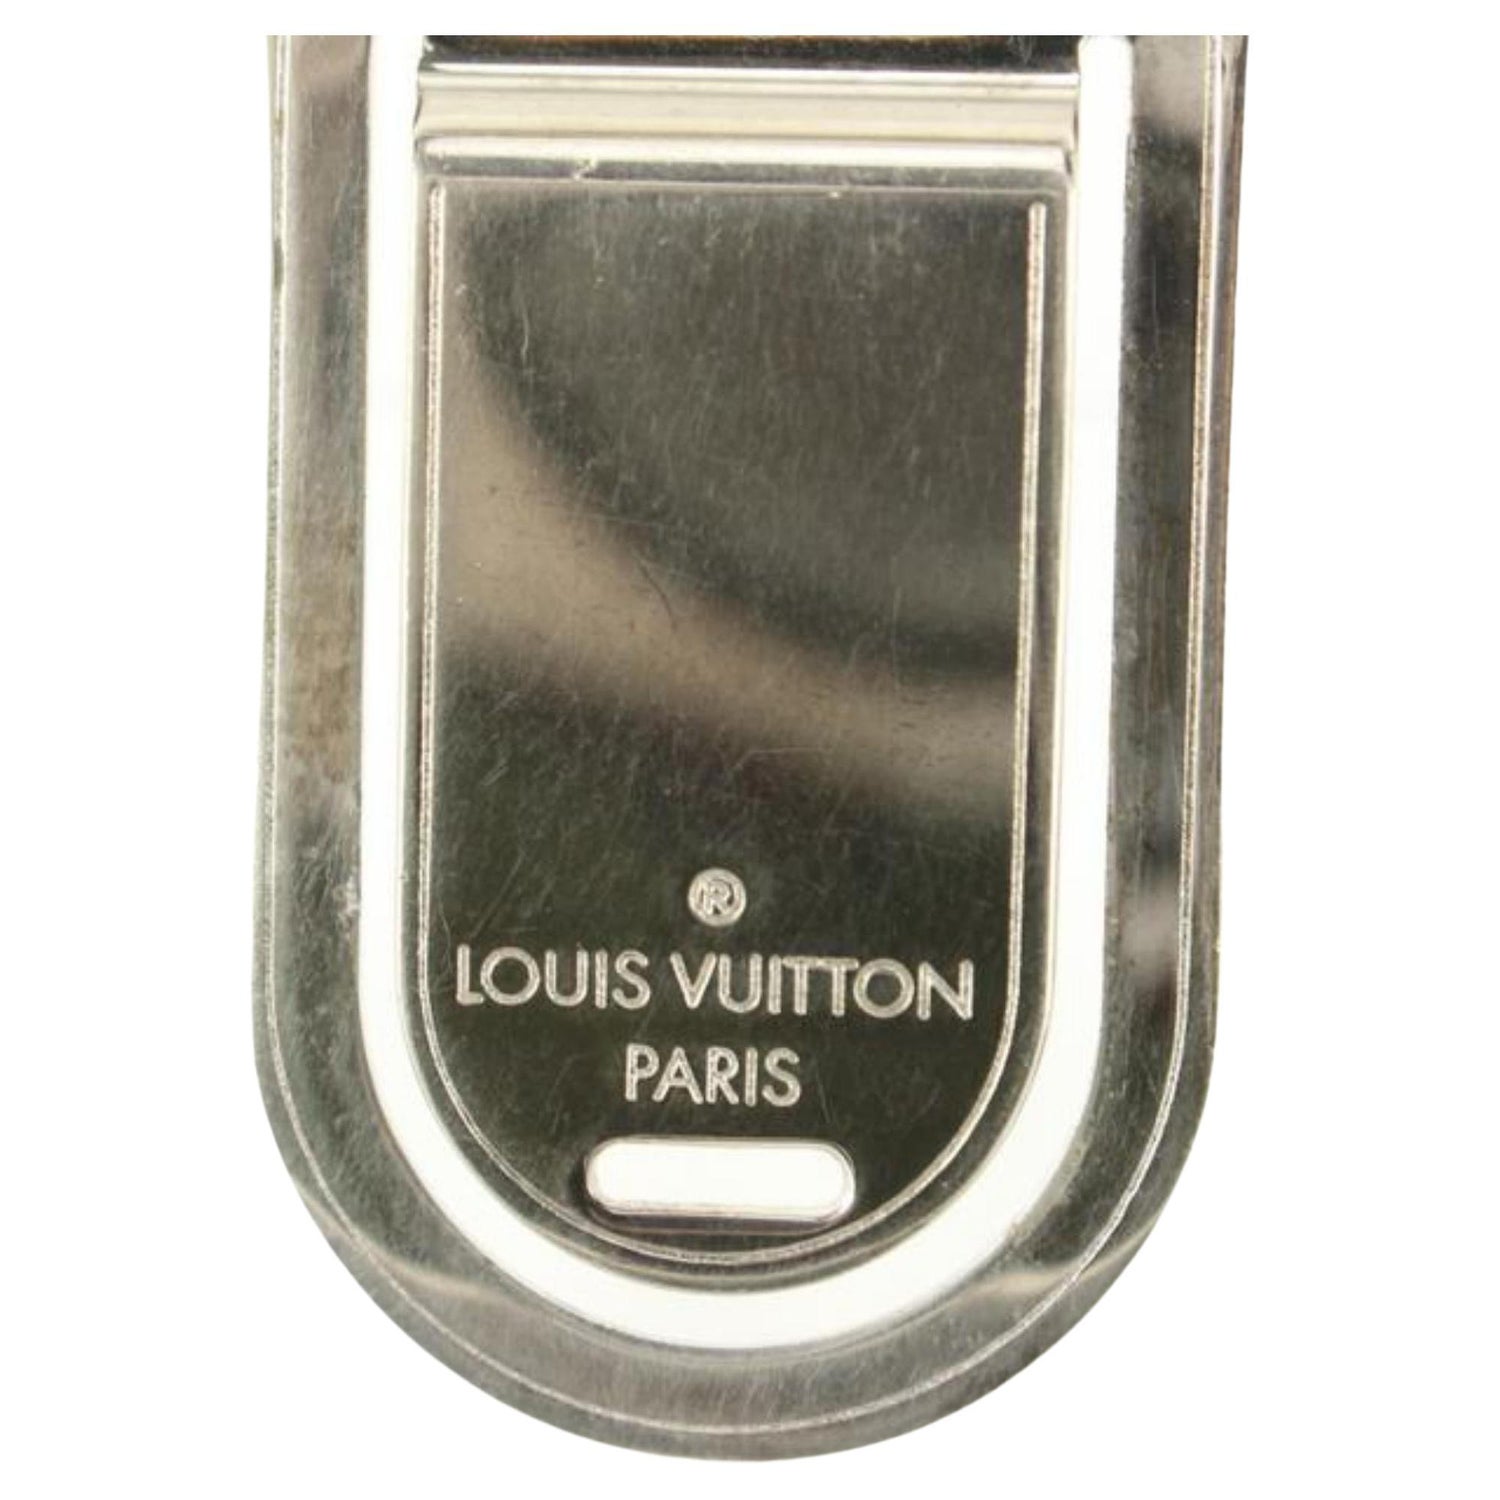 LOUIS VUITTON Bag charm Key chain ring holder AUTH TRUNKS & BAGS COIN Rare  FS 27